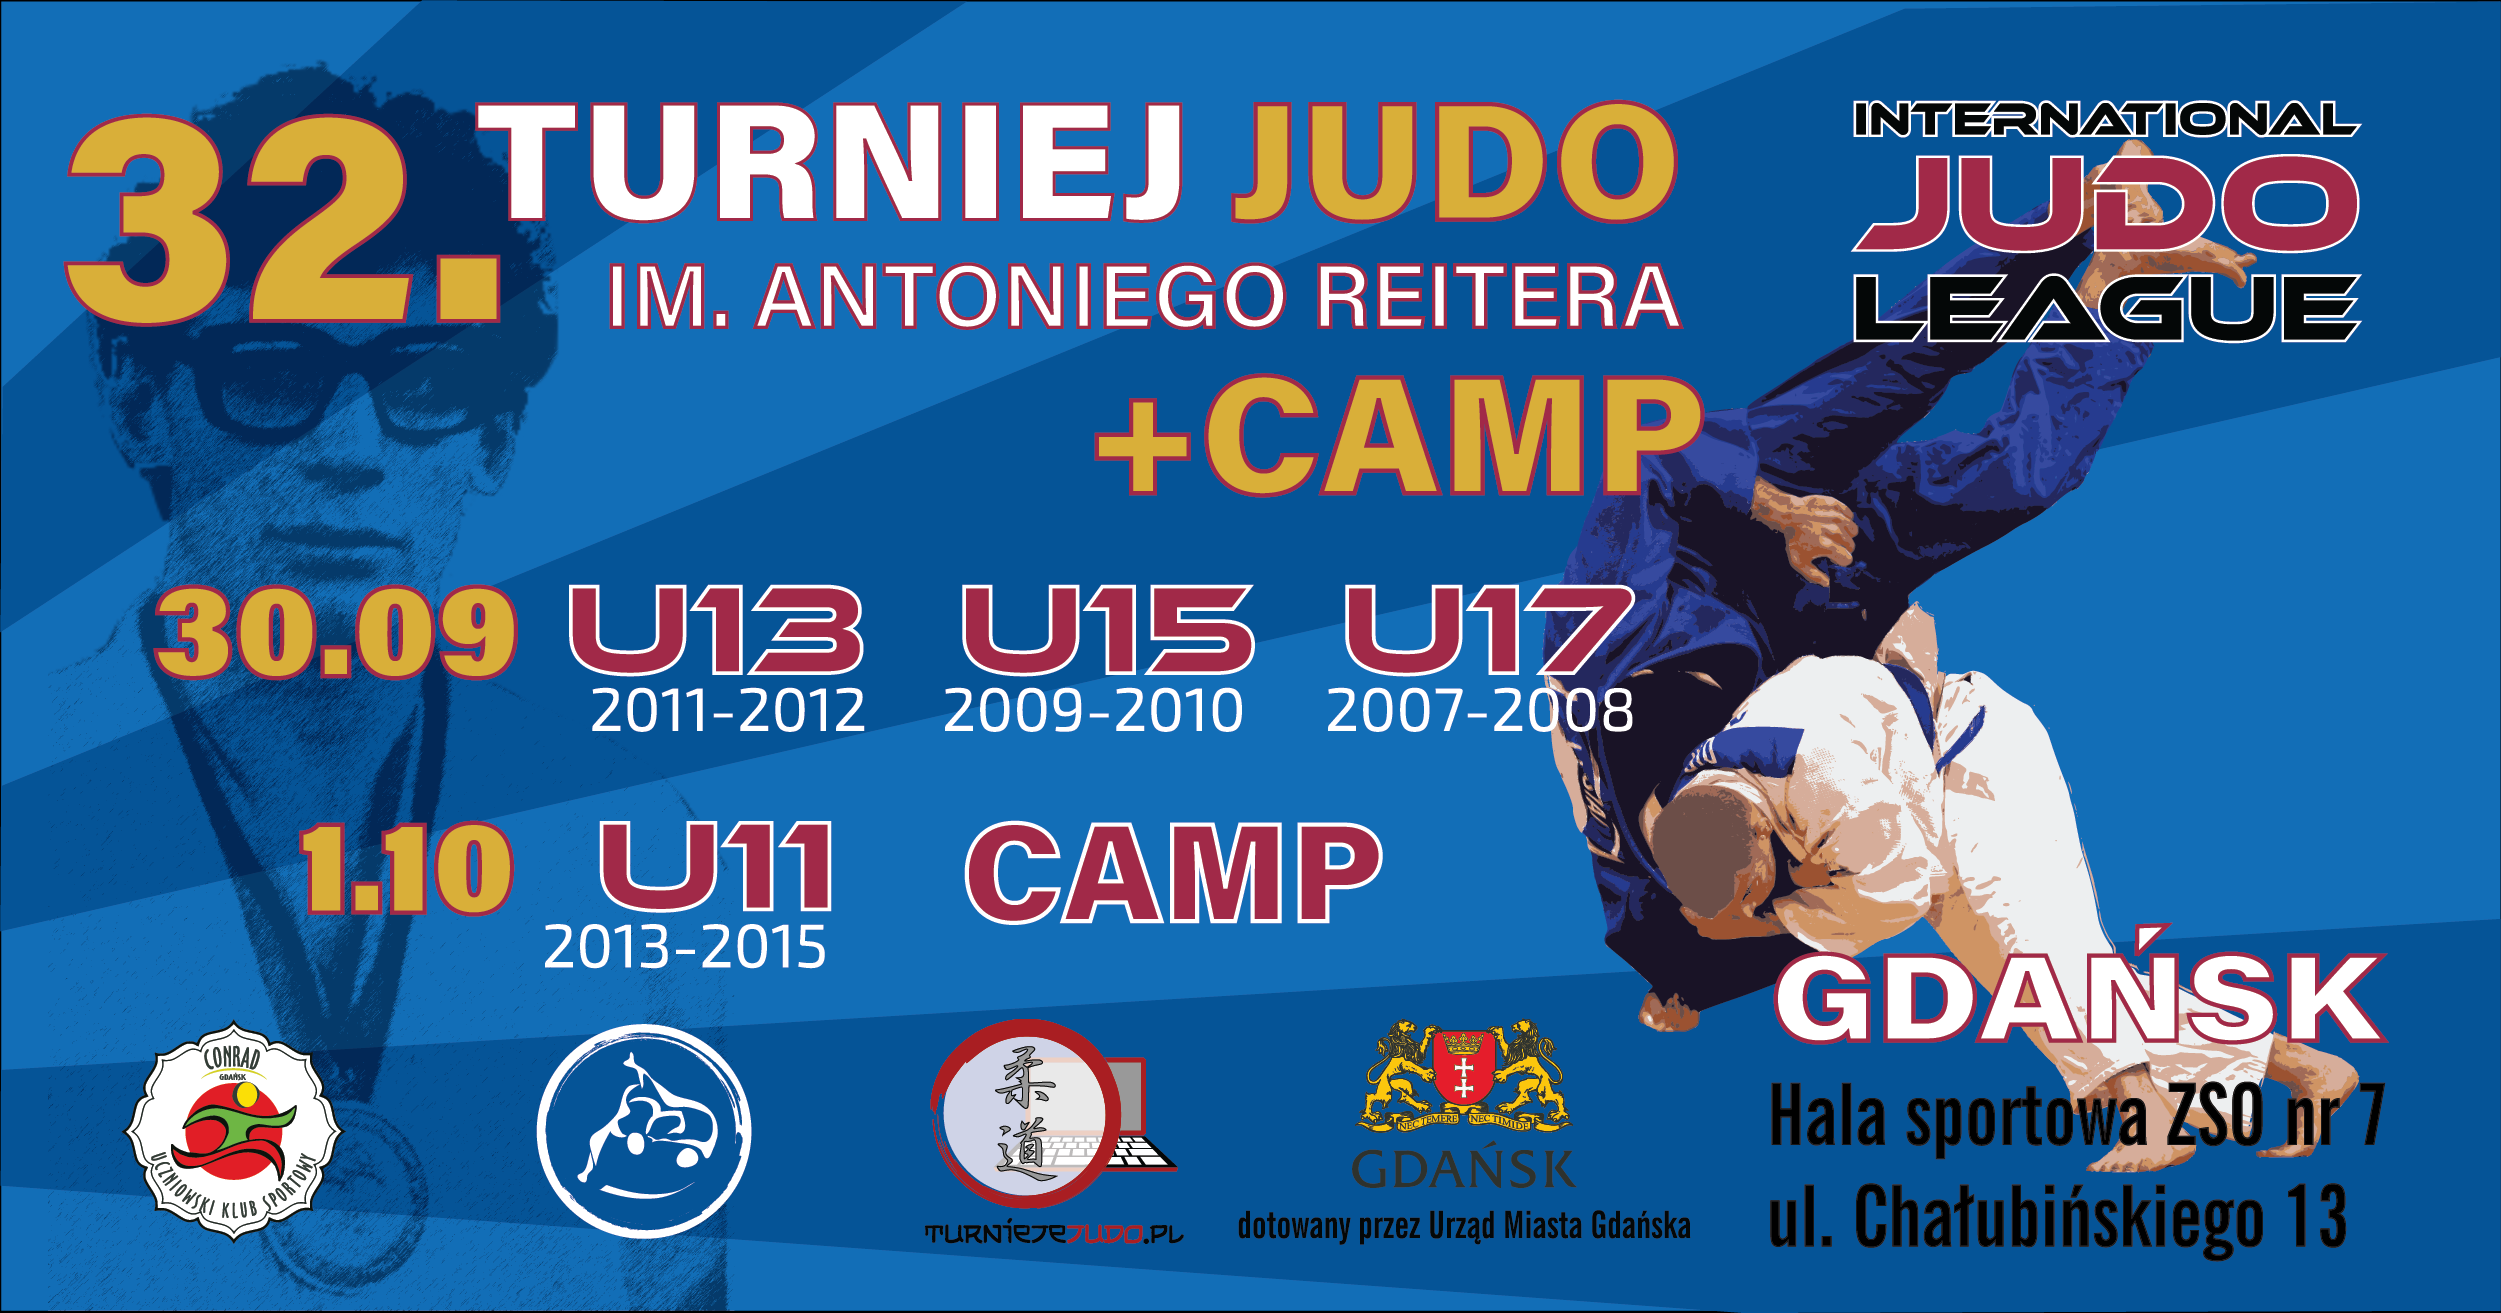 Zapraszamy na 32. Turniej judo im. Antoniego Reitera